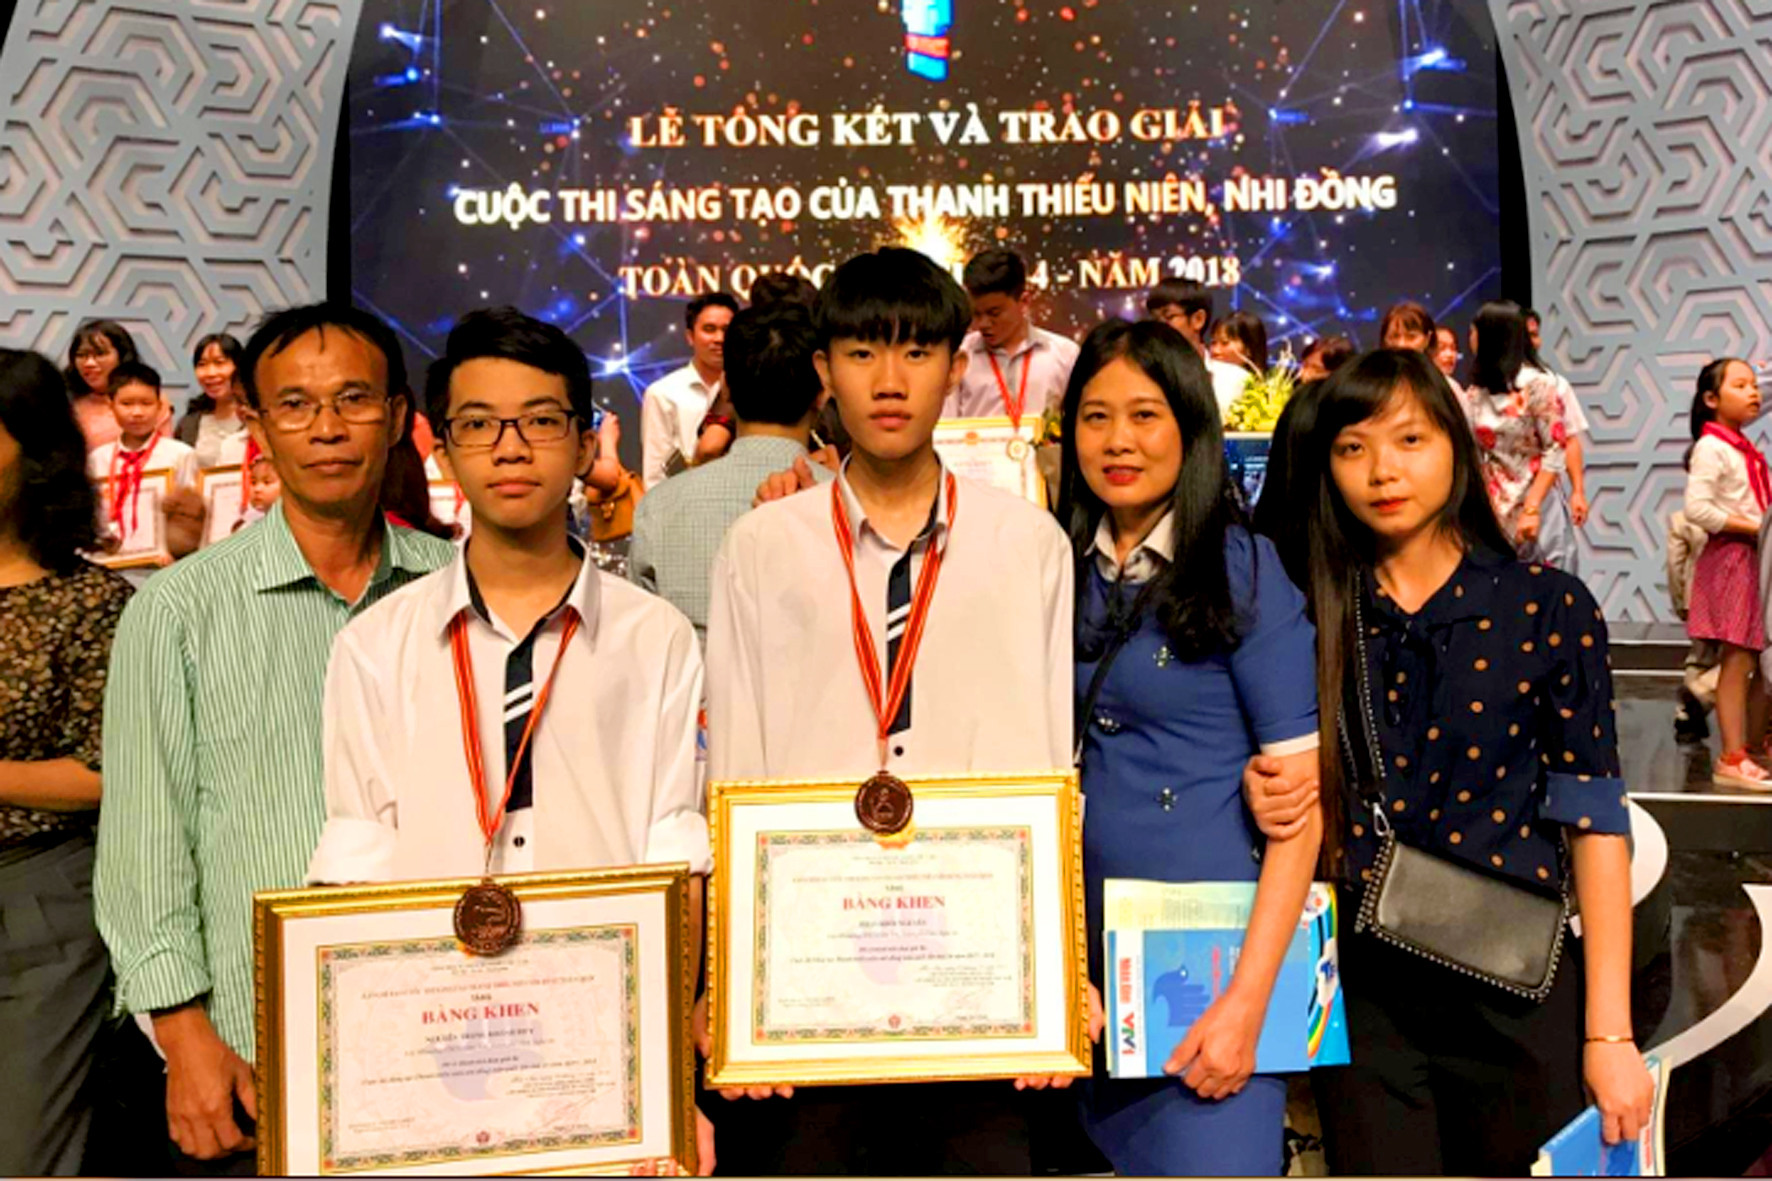 Nhóm tác giả Nguyễn Trọng Khánh Huy và Phan Khôi Nguyên tại lễ trao giải tối 23/10. Ảnh: Thái Sơn